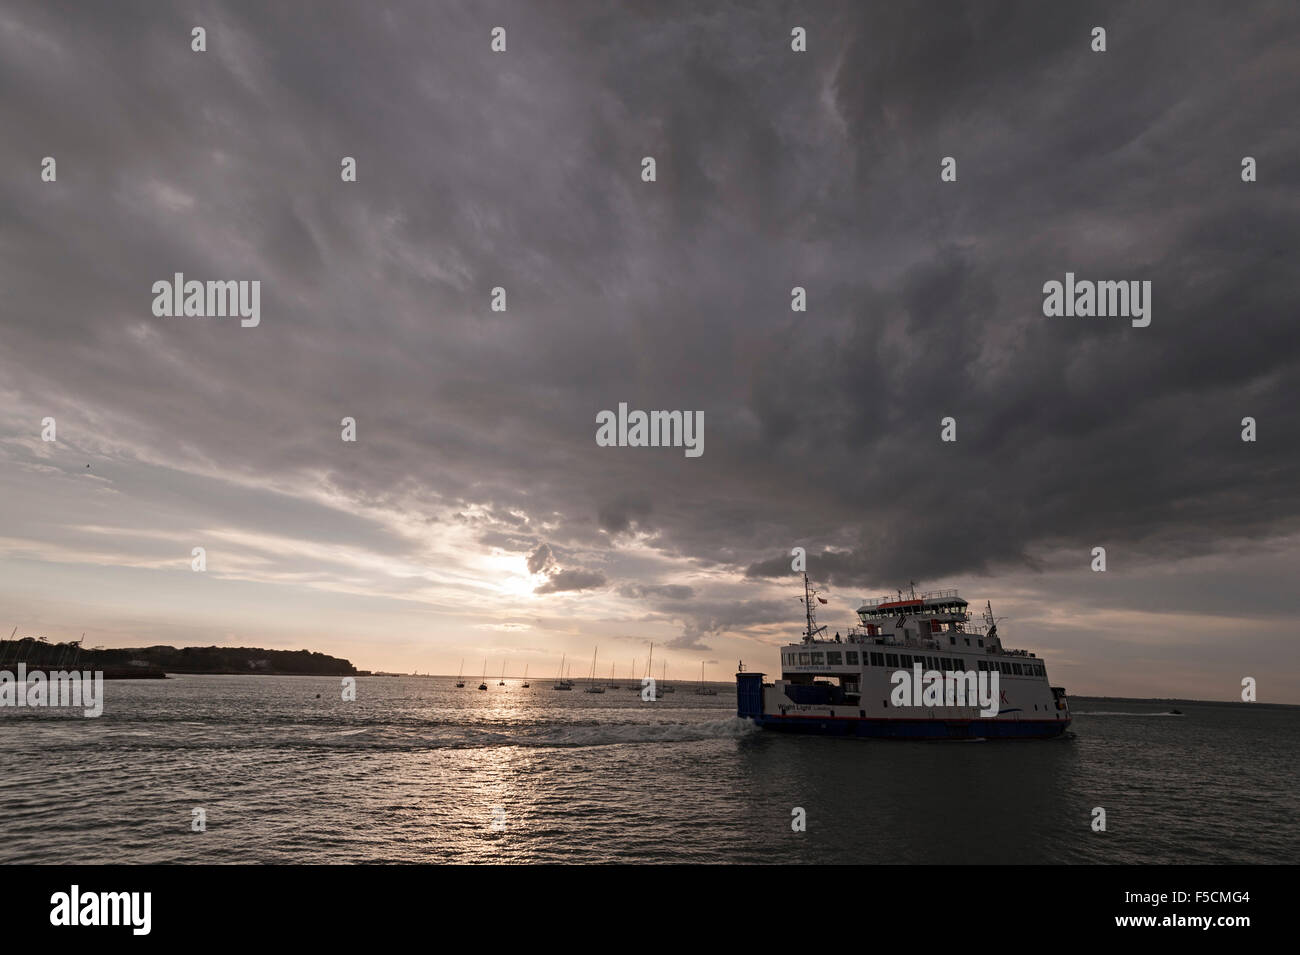 La isla de Wight wight yarmouth ferry de línea que va a lymington Foto de stock